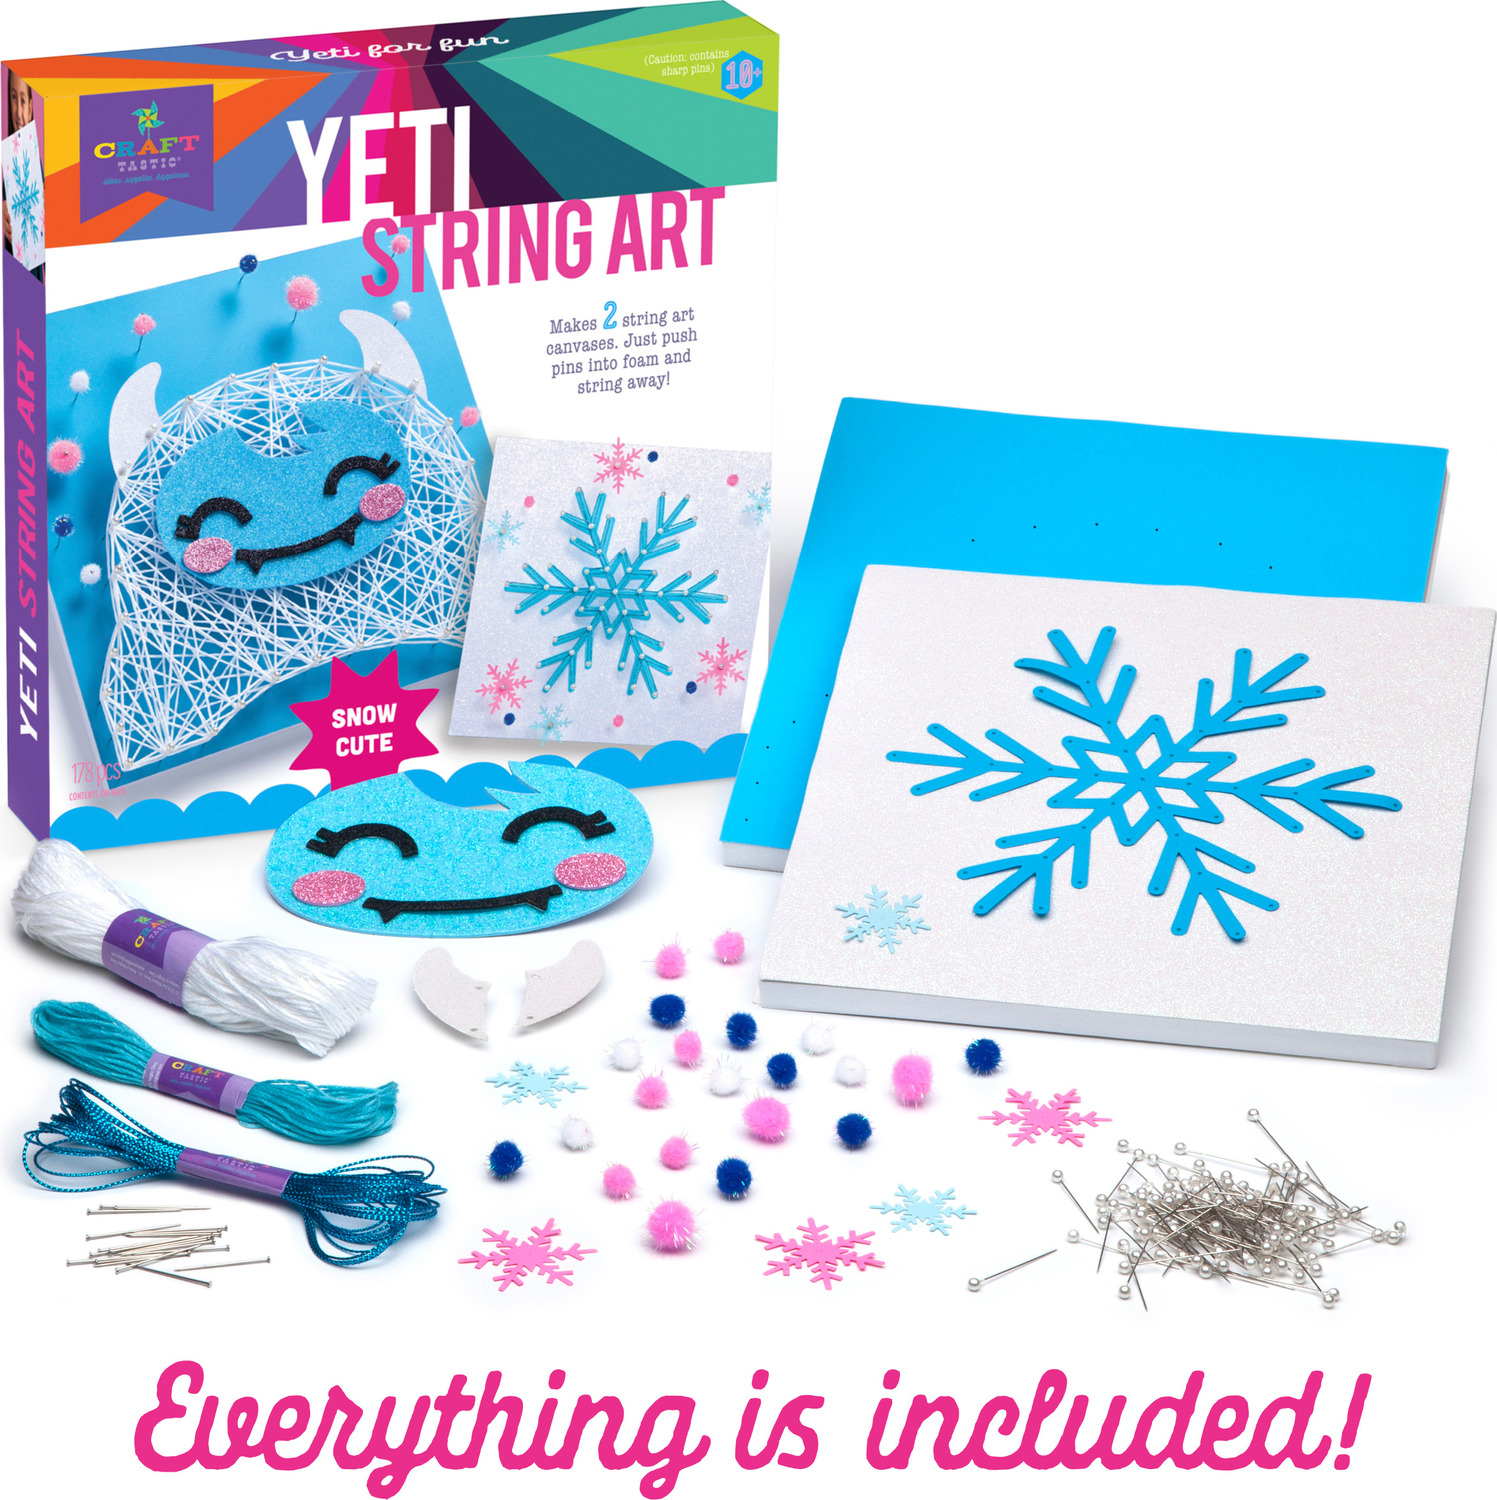 Adult Art Kit: Snow Days — LIGHTNIN' BUG DESIGNS